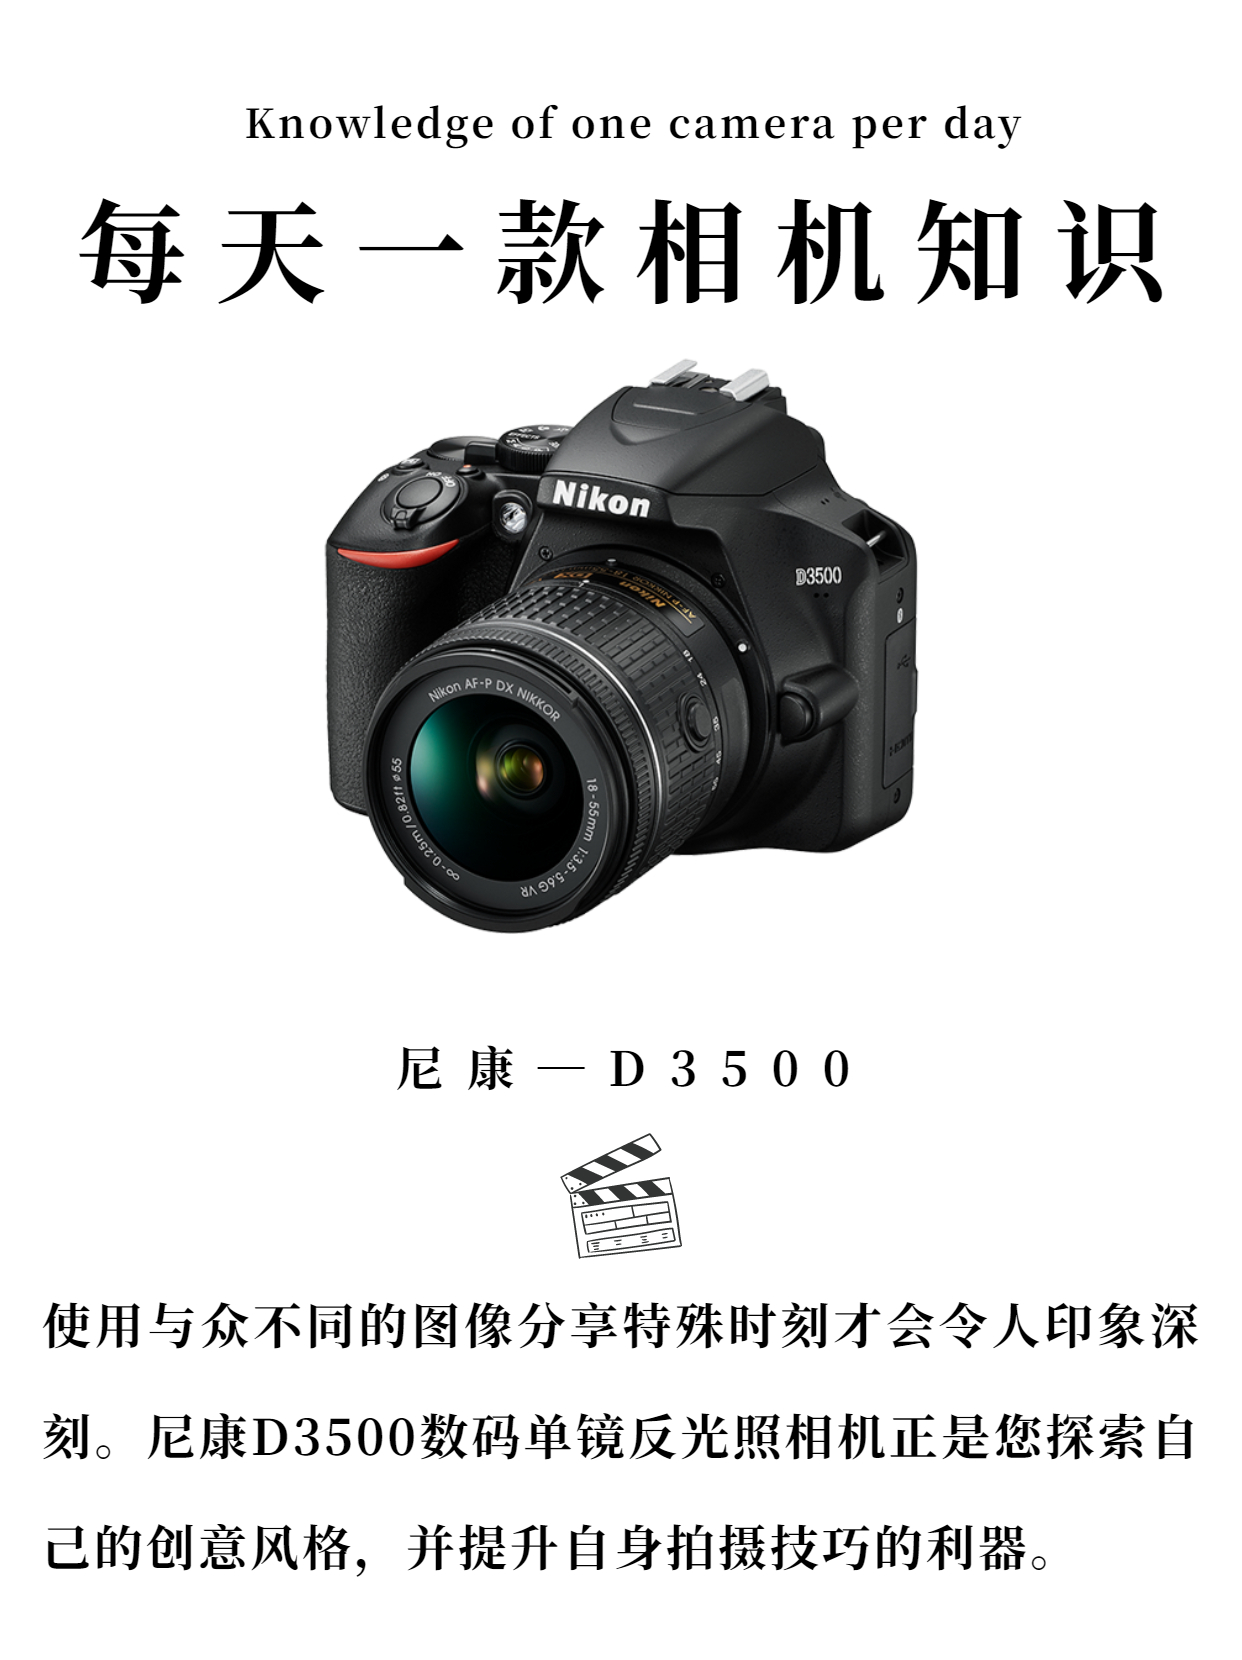 每天一款相机知识——尼康 D3500